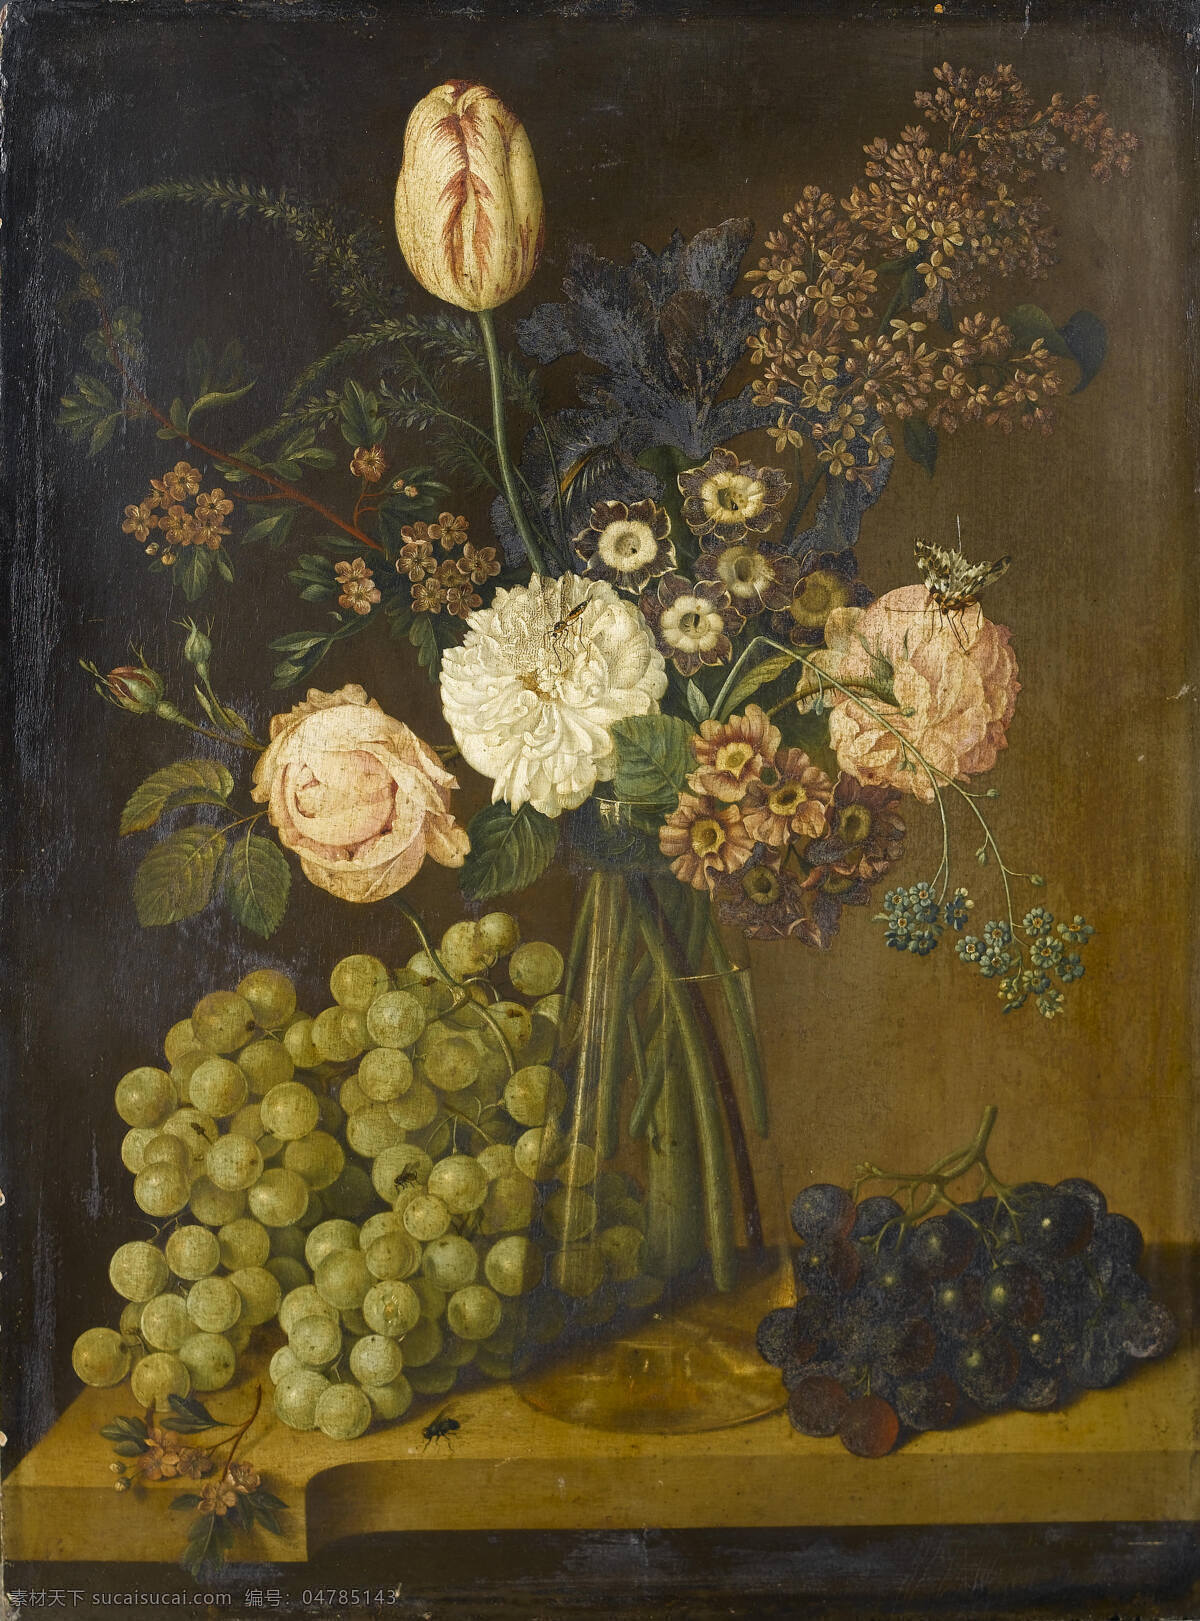 静物鲜花 葡萄 混搭鲜花 玻璃花瓶 苍蝇 古典油画 油画 绘画书法 文化艺术